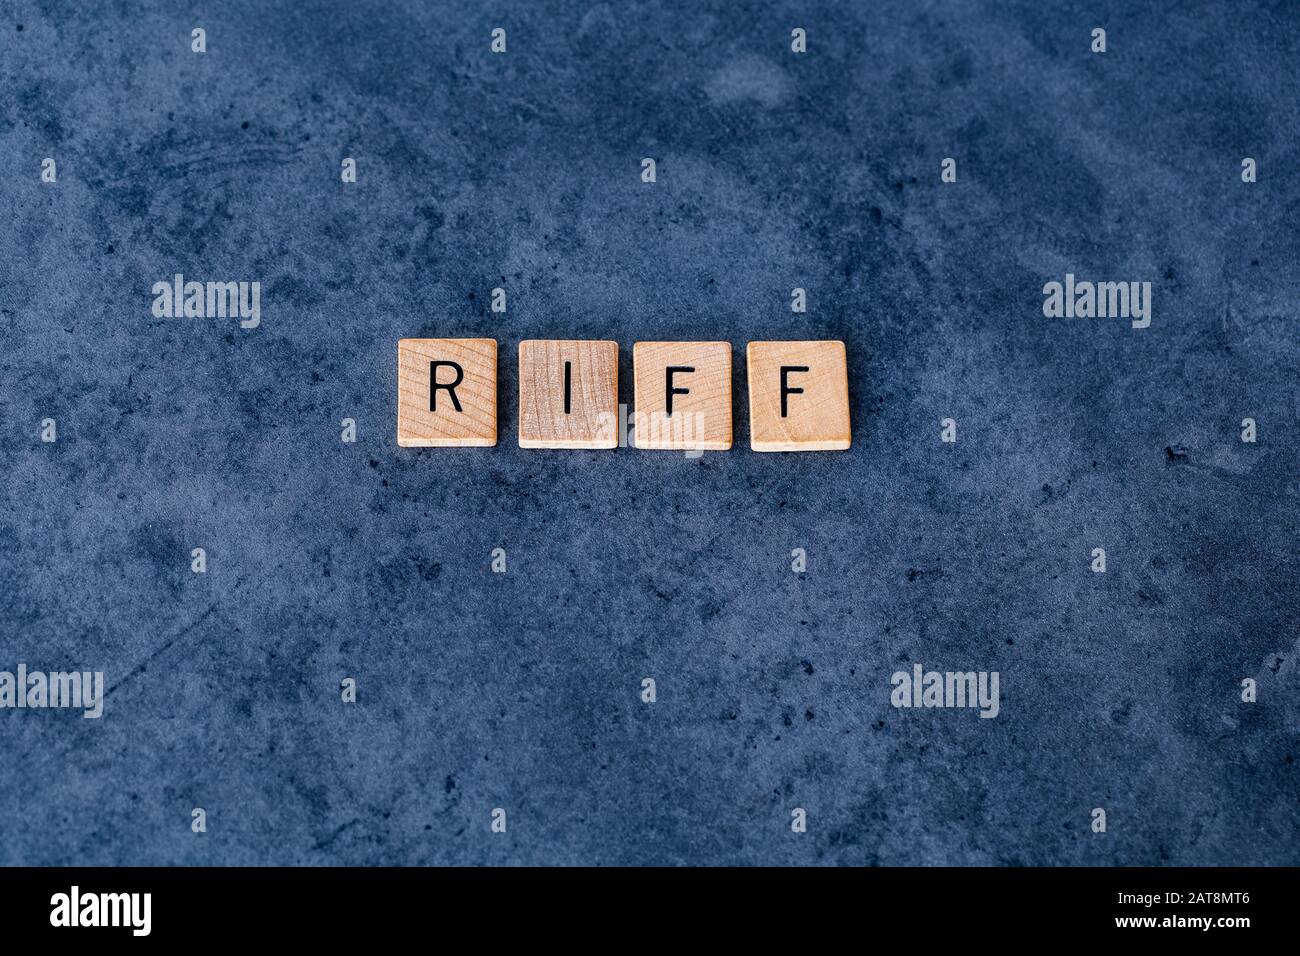 'Riff' (Fondo De Ingresos De jubilación Registrados), escrito en mosaicos de cartas de madera sobre un fondo oscuro y rugoso Foto de stock